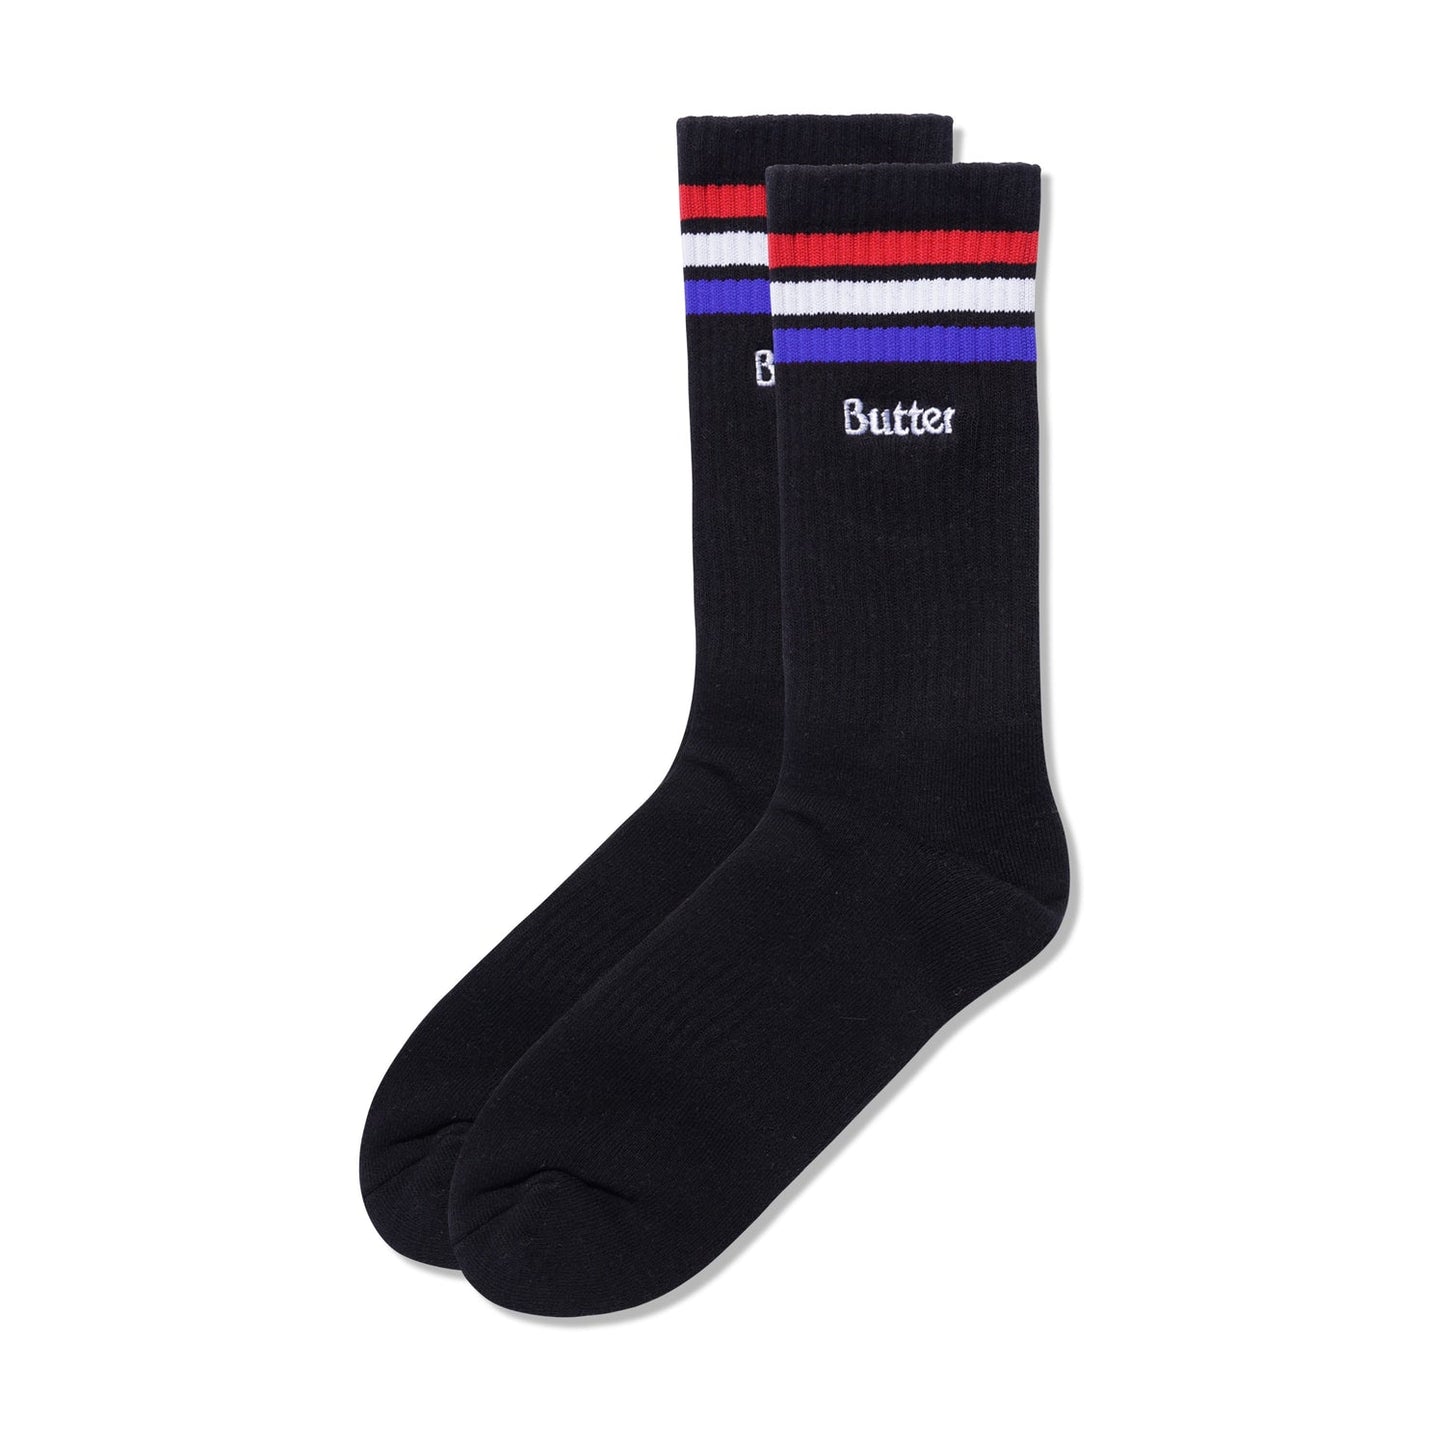 Stripe Socks - Black